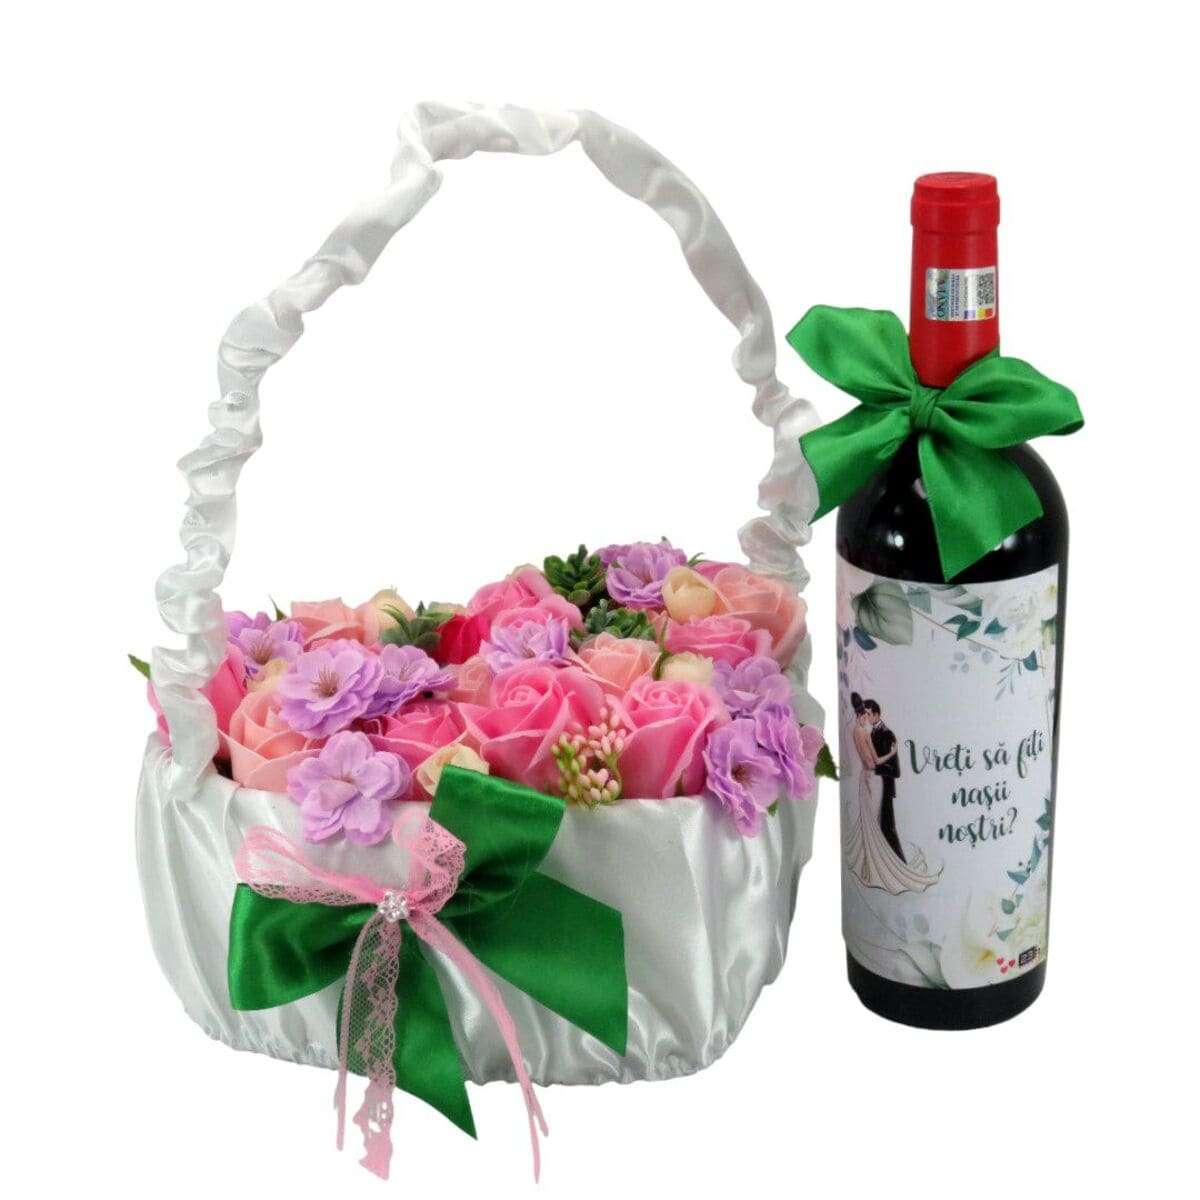 Cadou Cerere Nasi Cununie sticla vin personalizata & cos cu flori m2 ILIF402011 (3)